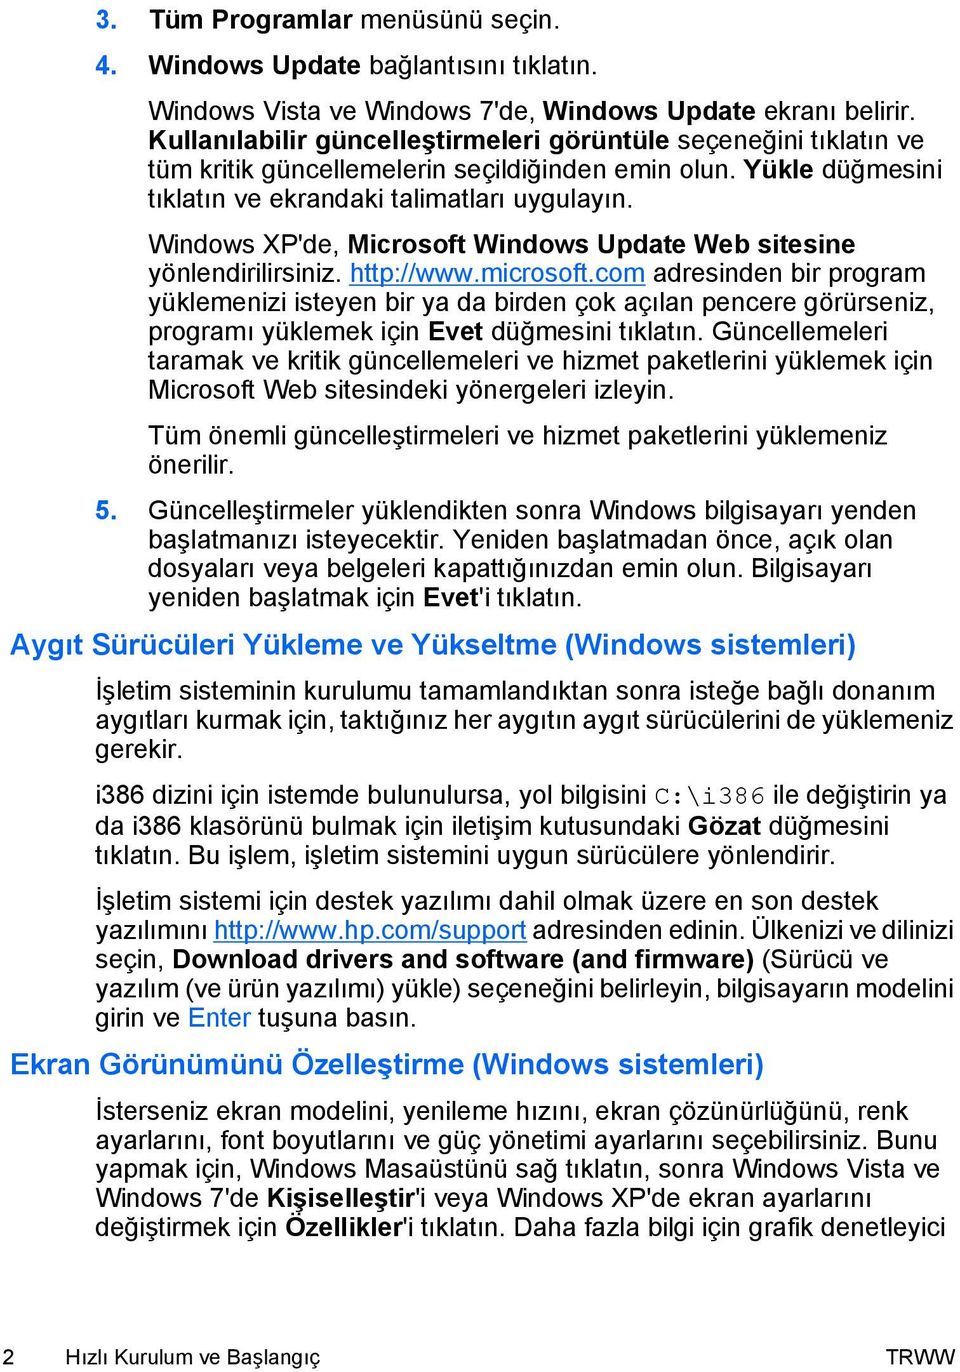 Windows XP'de, Microsoft Windows Update Web sitesine yönlendirilirsiniz. http://www.microsoft.